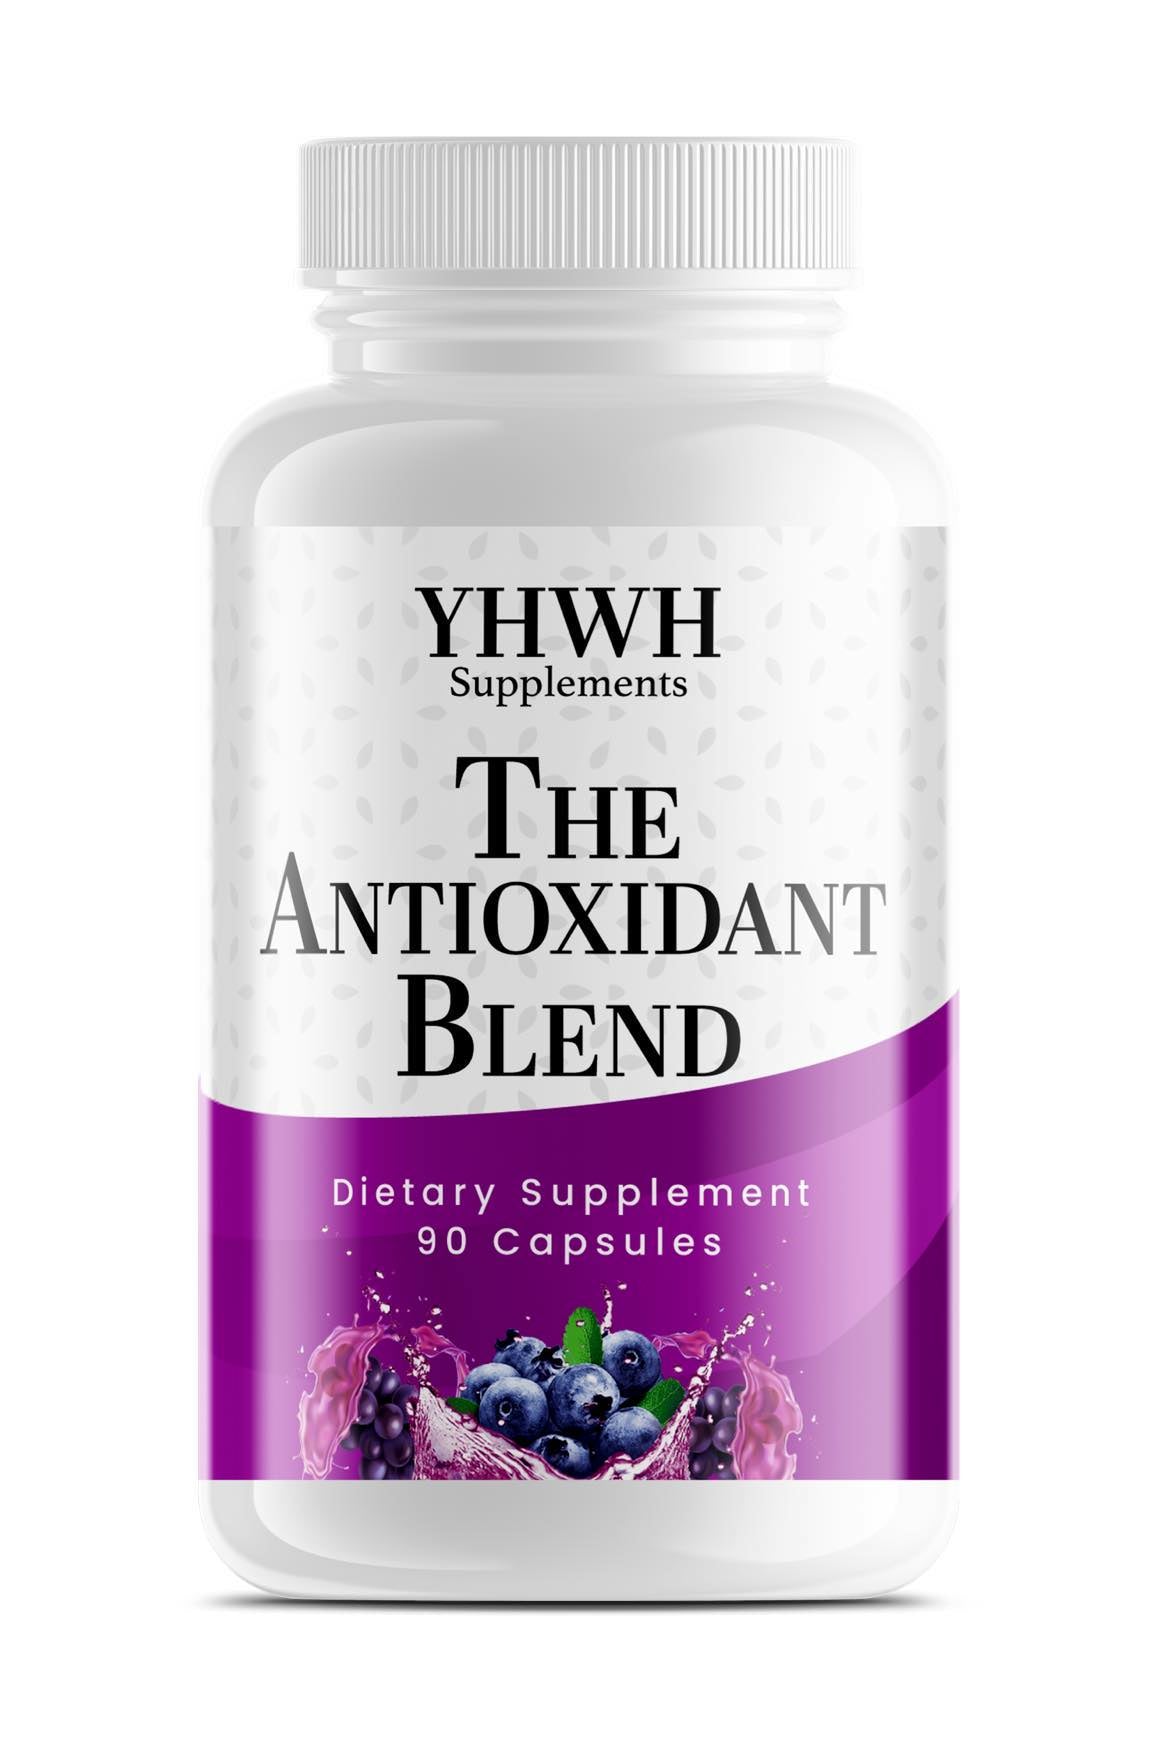 Antioxidant blend supplements